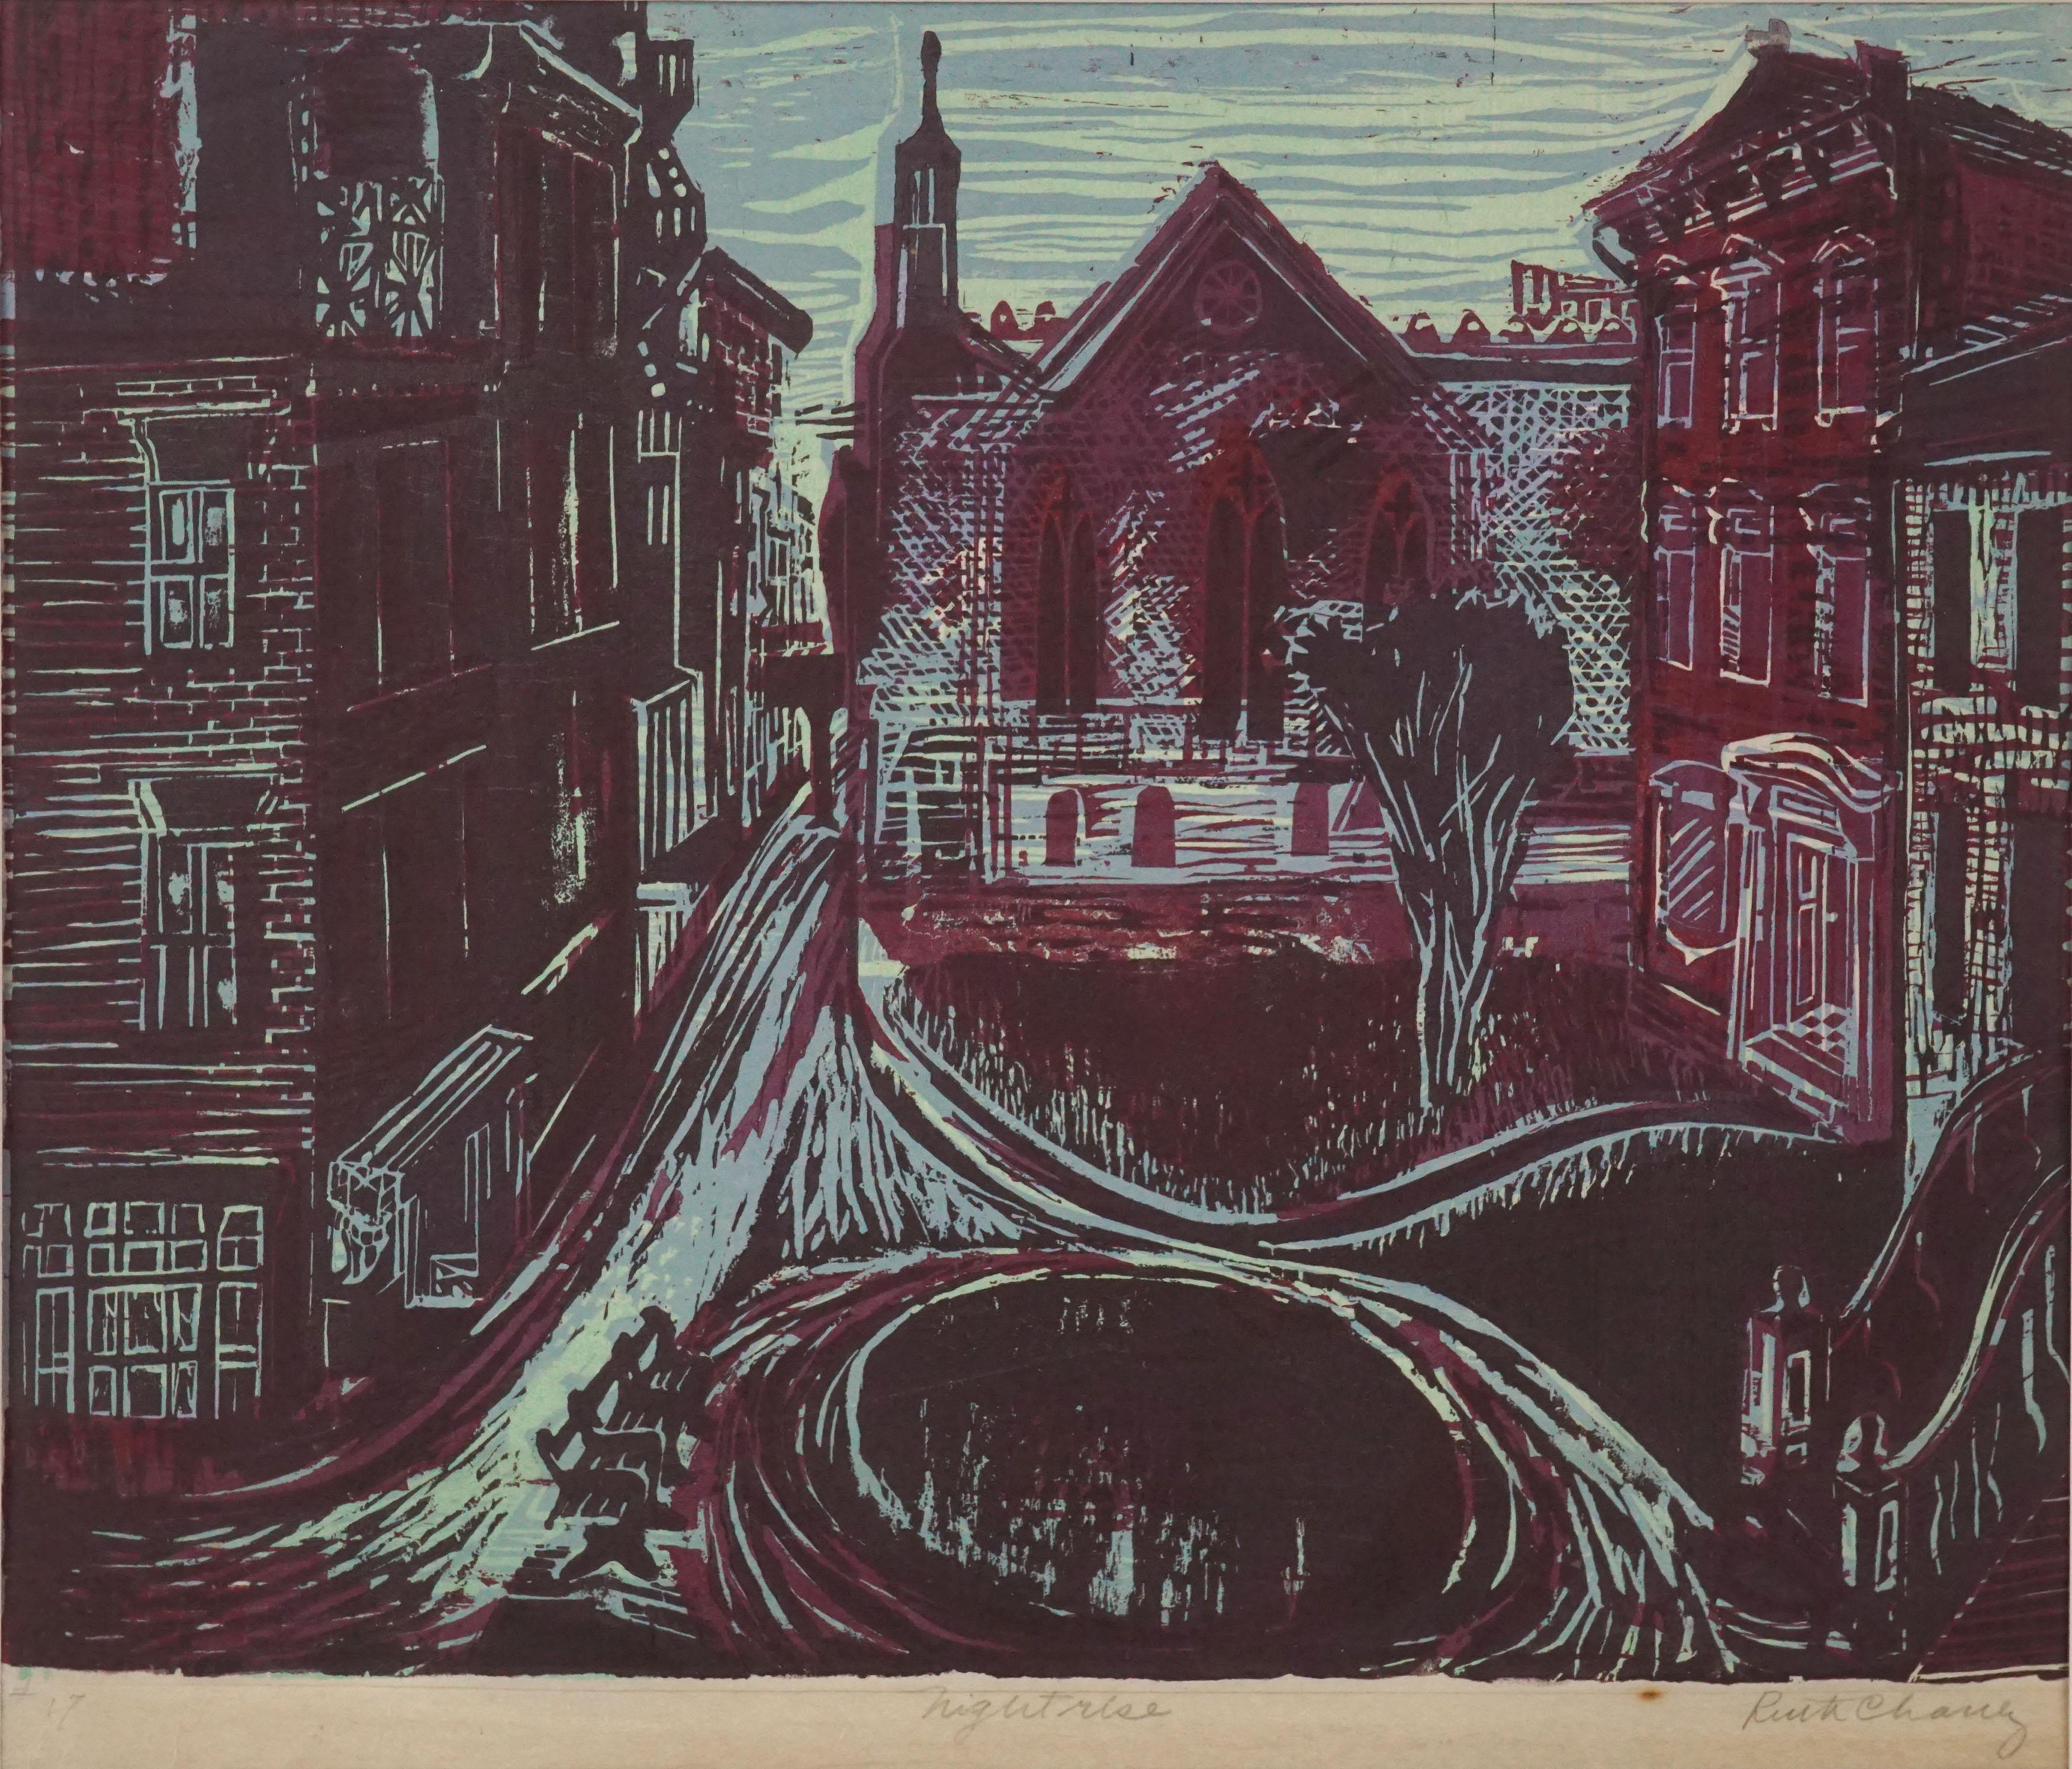 Œuvres publiques « Nightrise », gravure sur bois en couleur - Print de Ruth Chaney